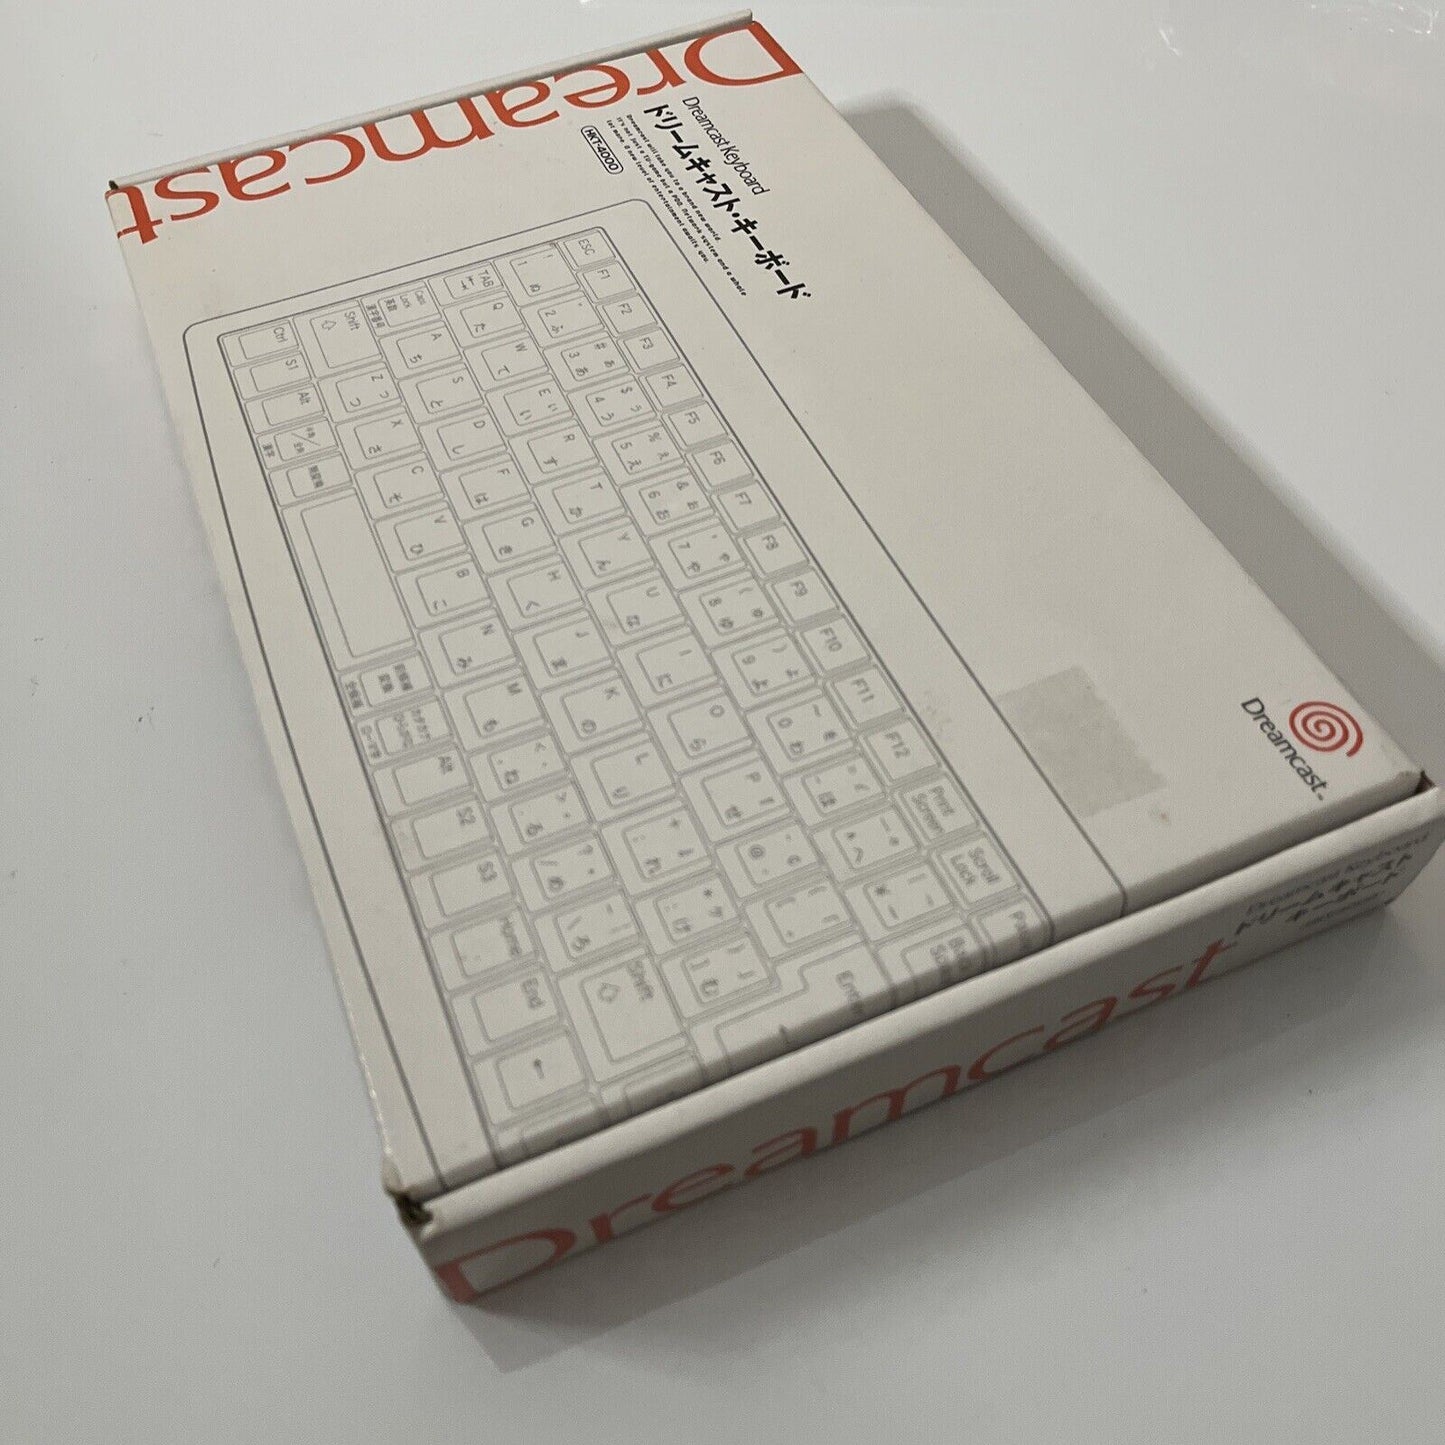 Official Sega Dreamcast Keyboard HKT-4000 NEW